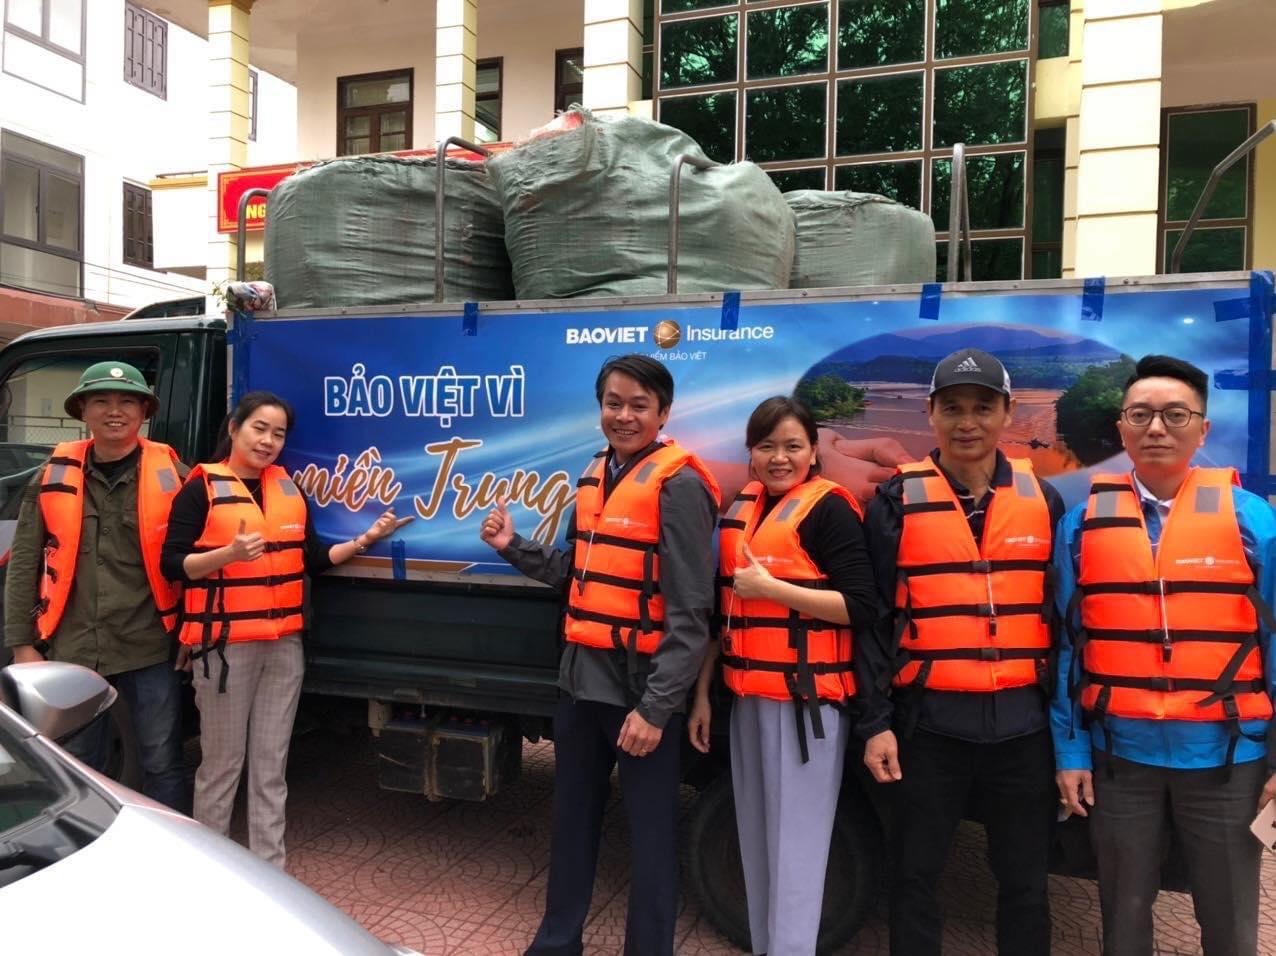 Bảo Việt hỗ trợ đồng bào các tỉnh miền Trung kịp thời khắc phục hậu quả của bão lũ, sớm vượt qua khó khăn, ổn định cuộc sống, phục hồi sản xuất kinh doanh.